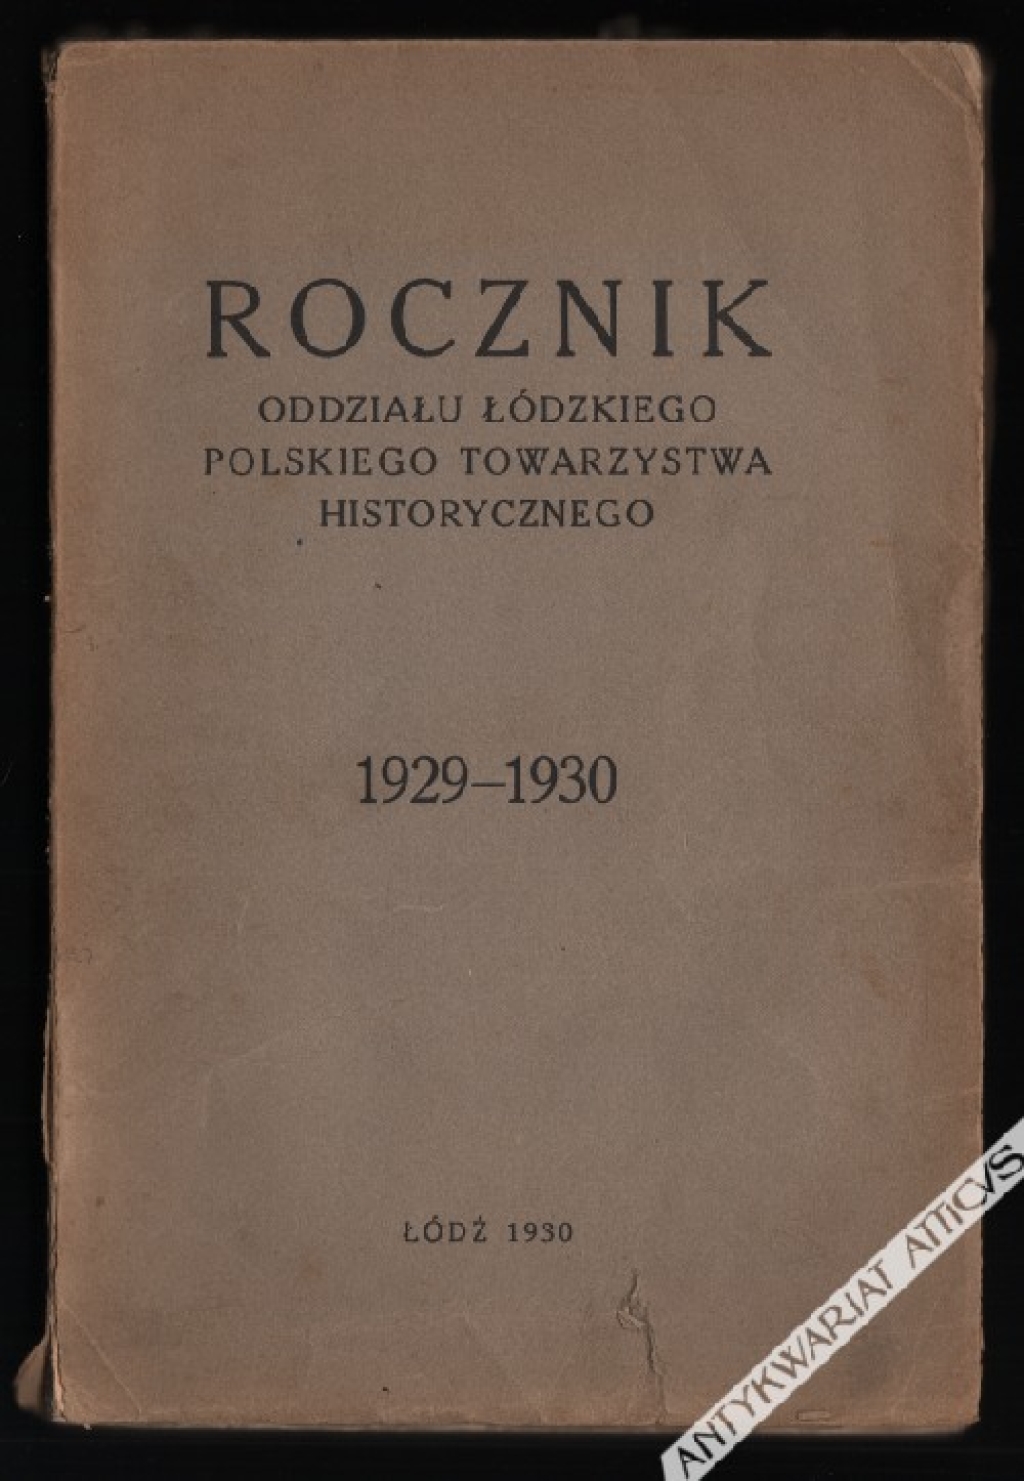 Rocznik Oddziału Łódzkiego Polskiego Towarzystwa Historycznego. 1929-1930